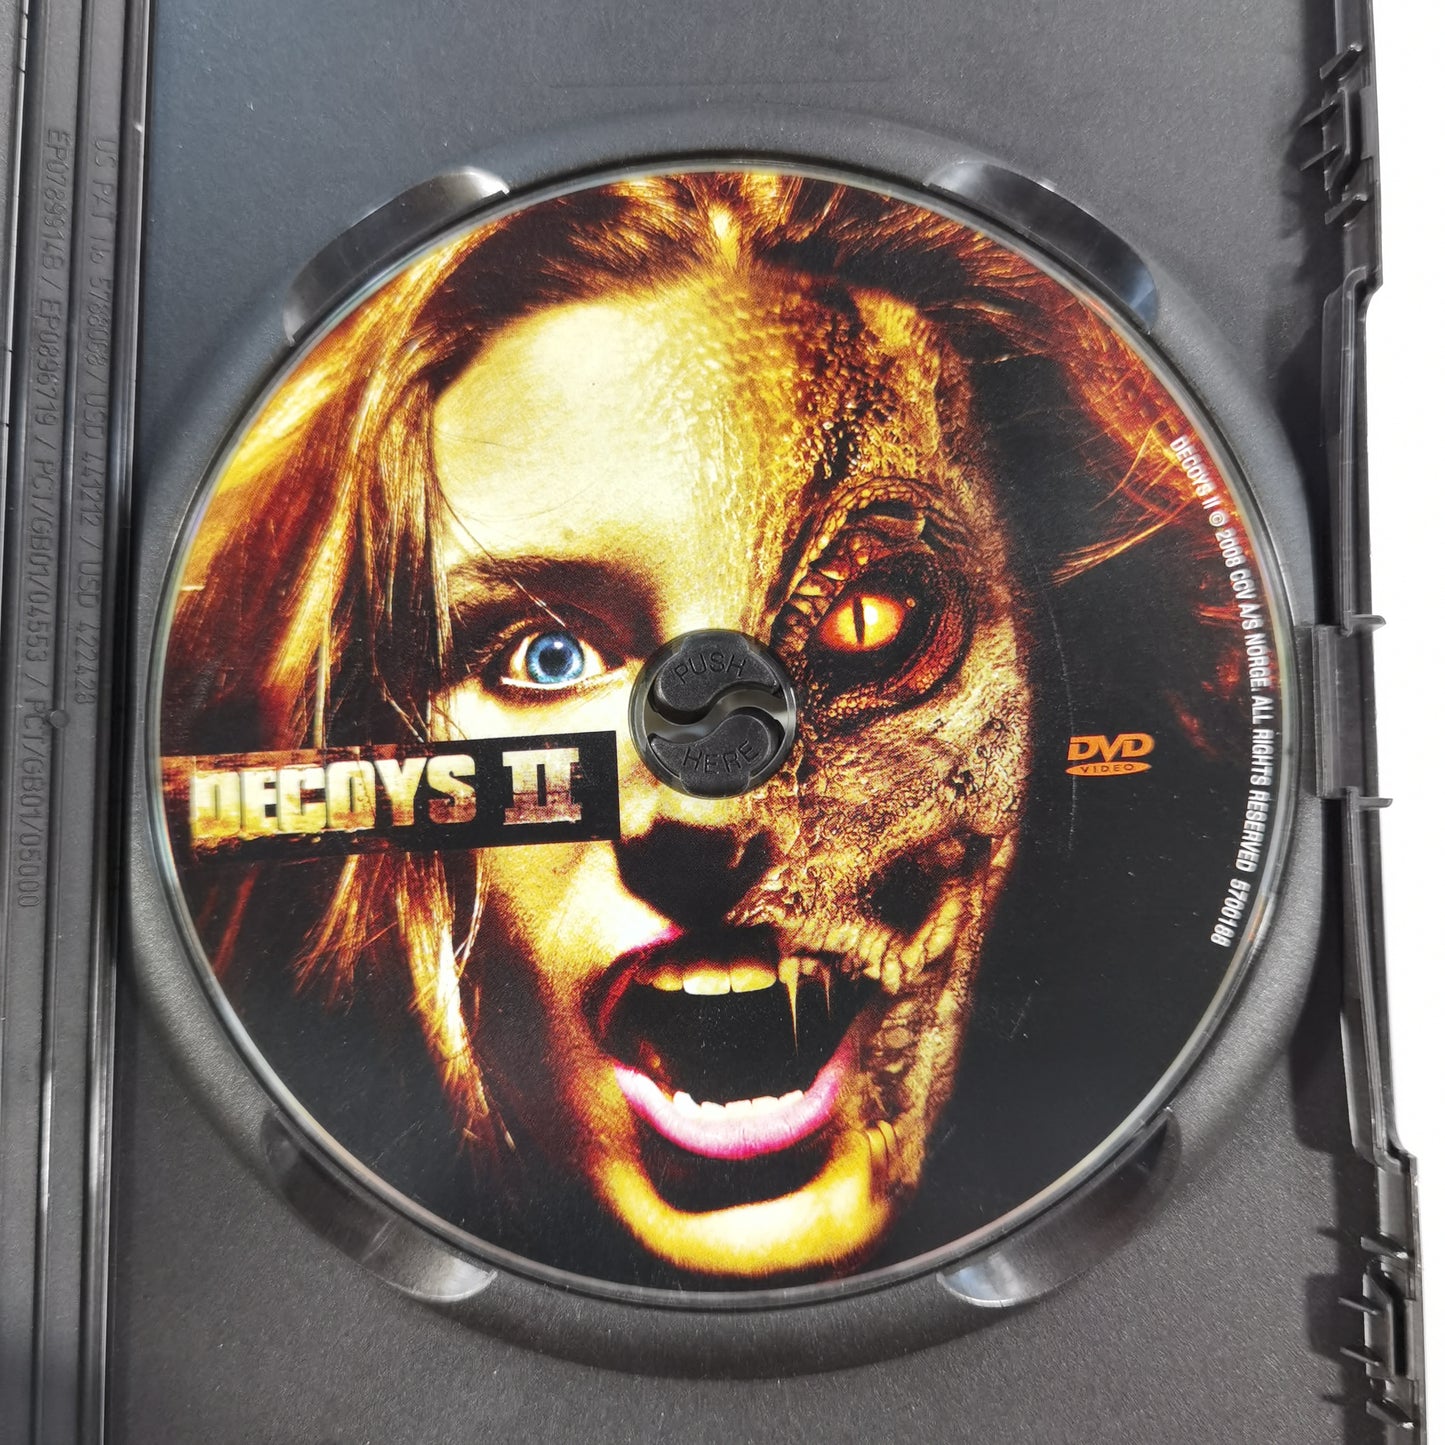 Decoys 2: Alien Seduction (2007) - DVD SE RC